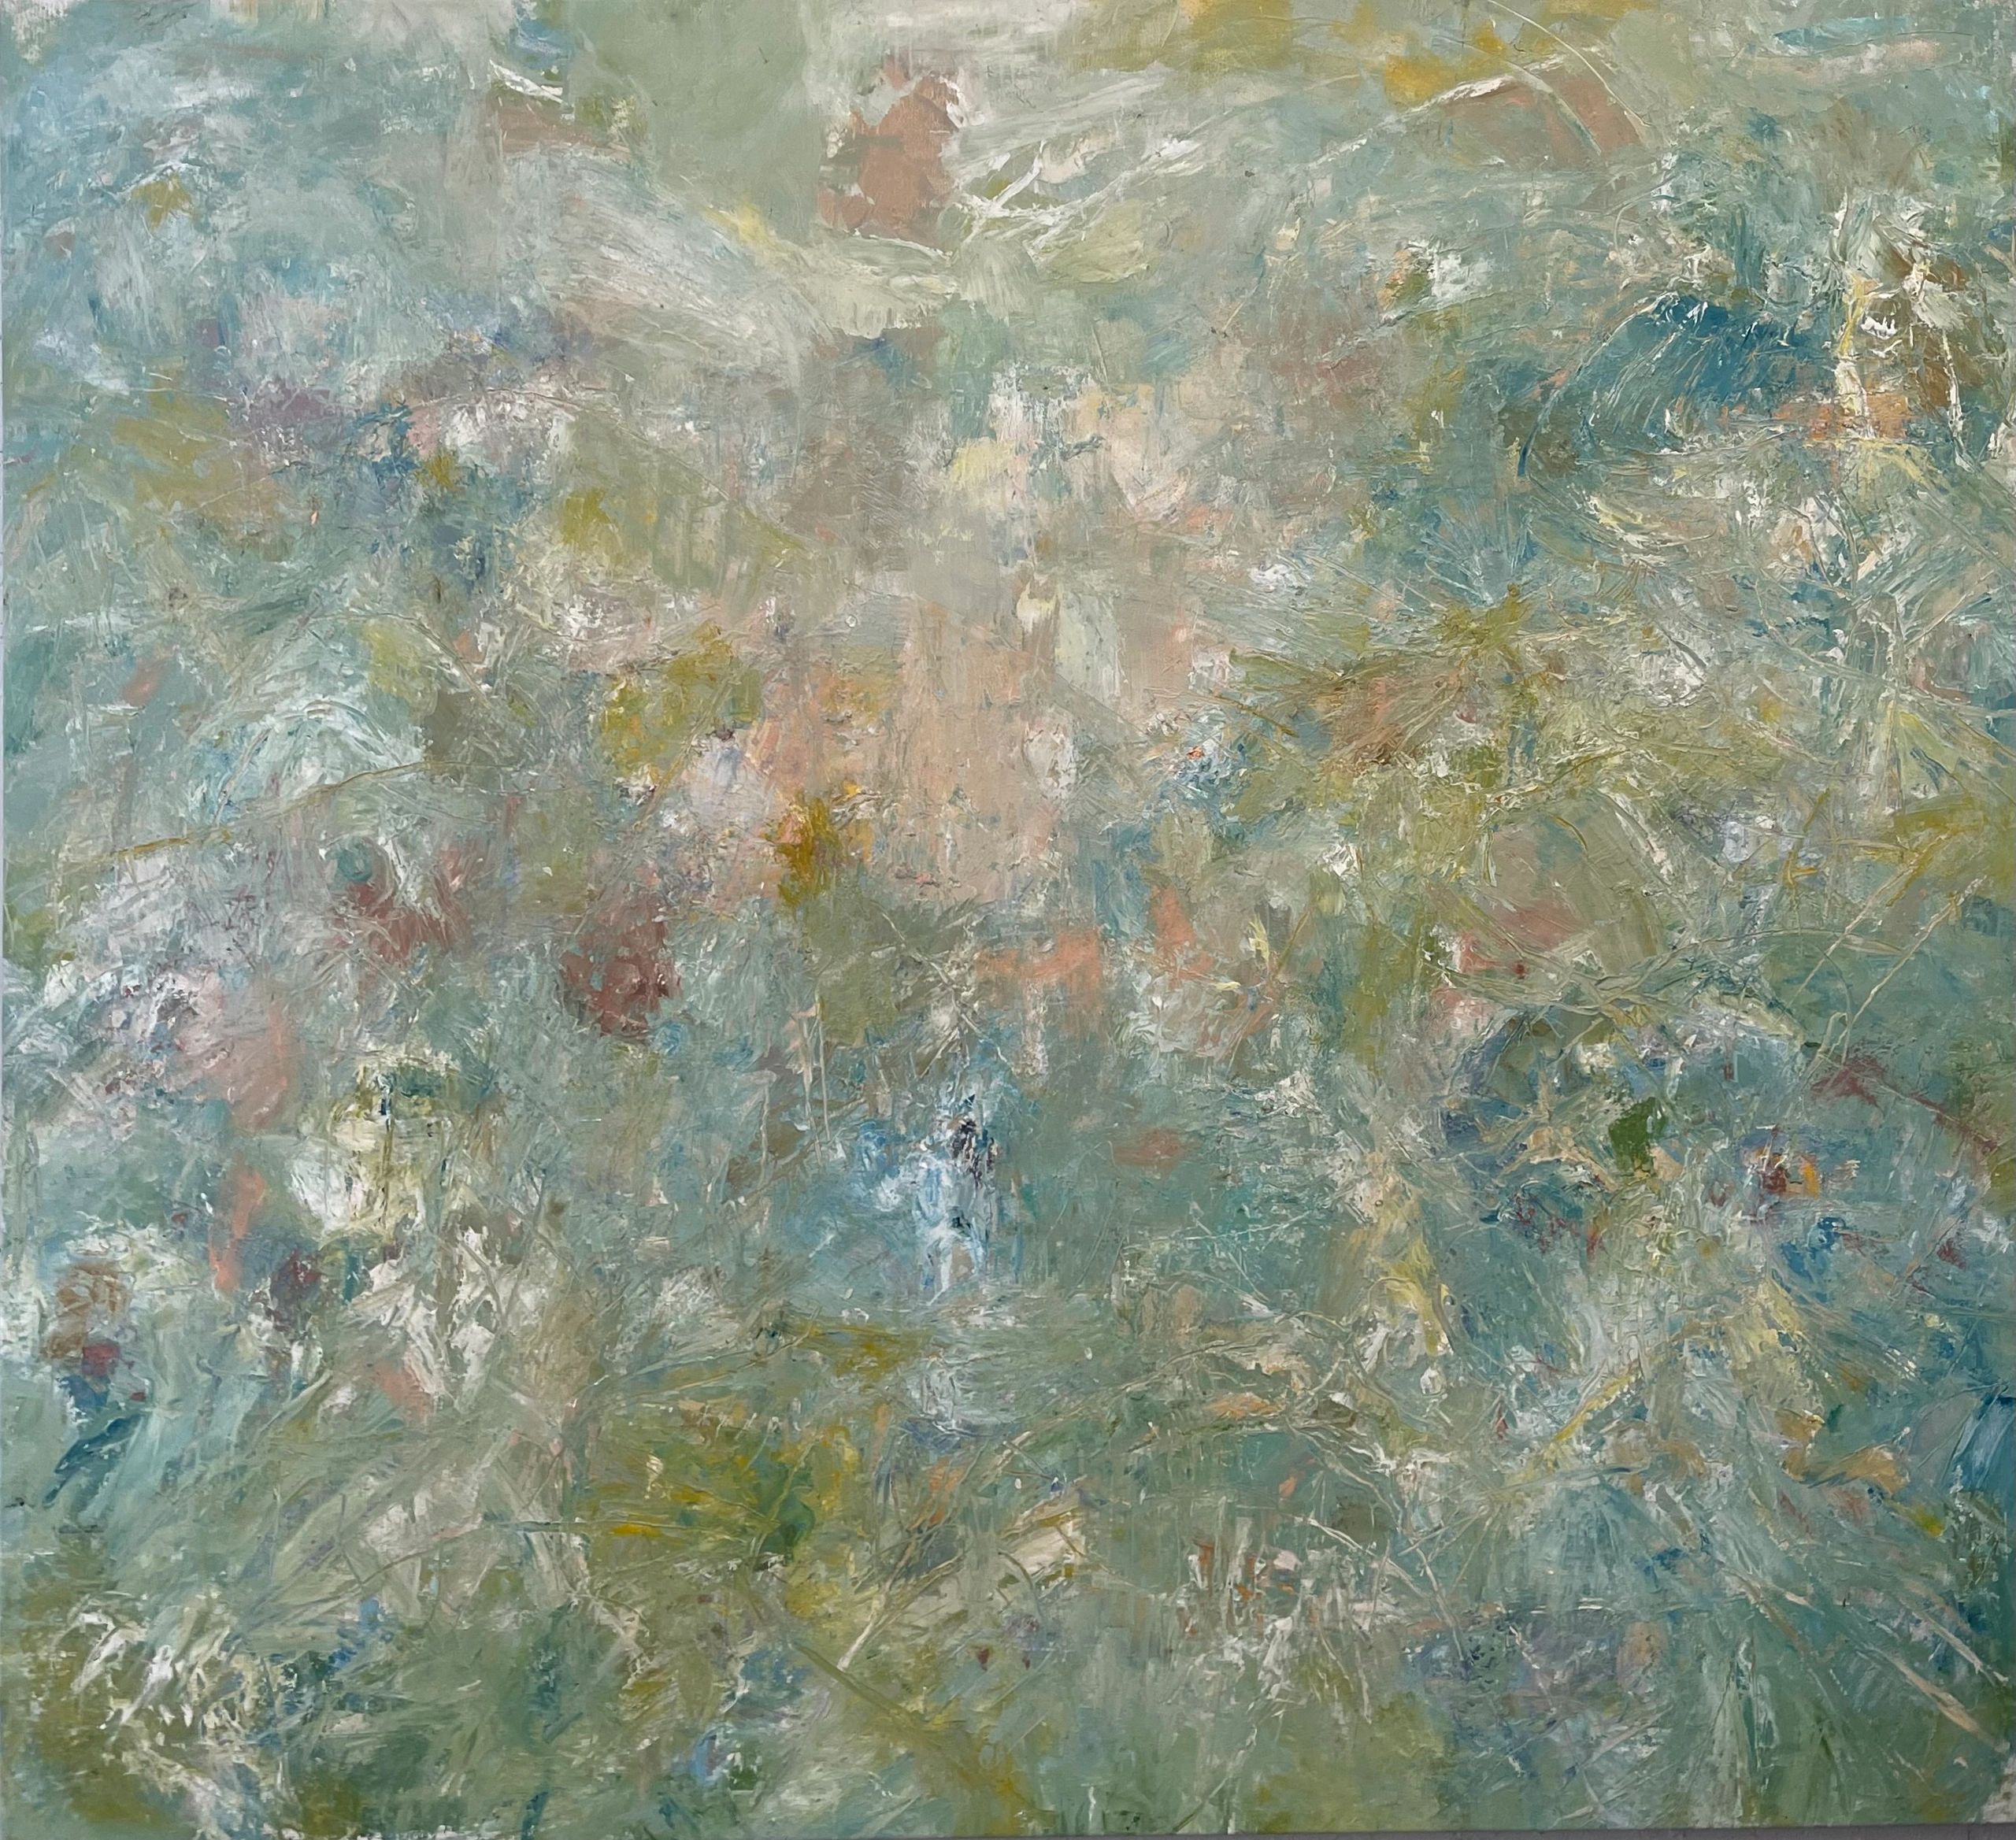 Costal Rhythms
58x64” oil on canvas 